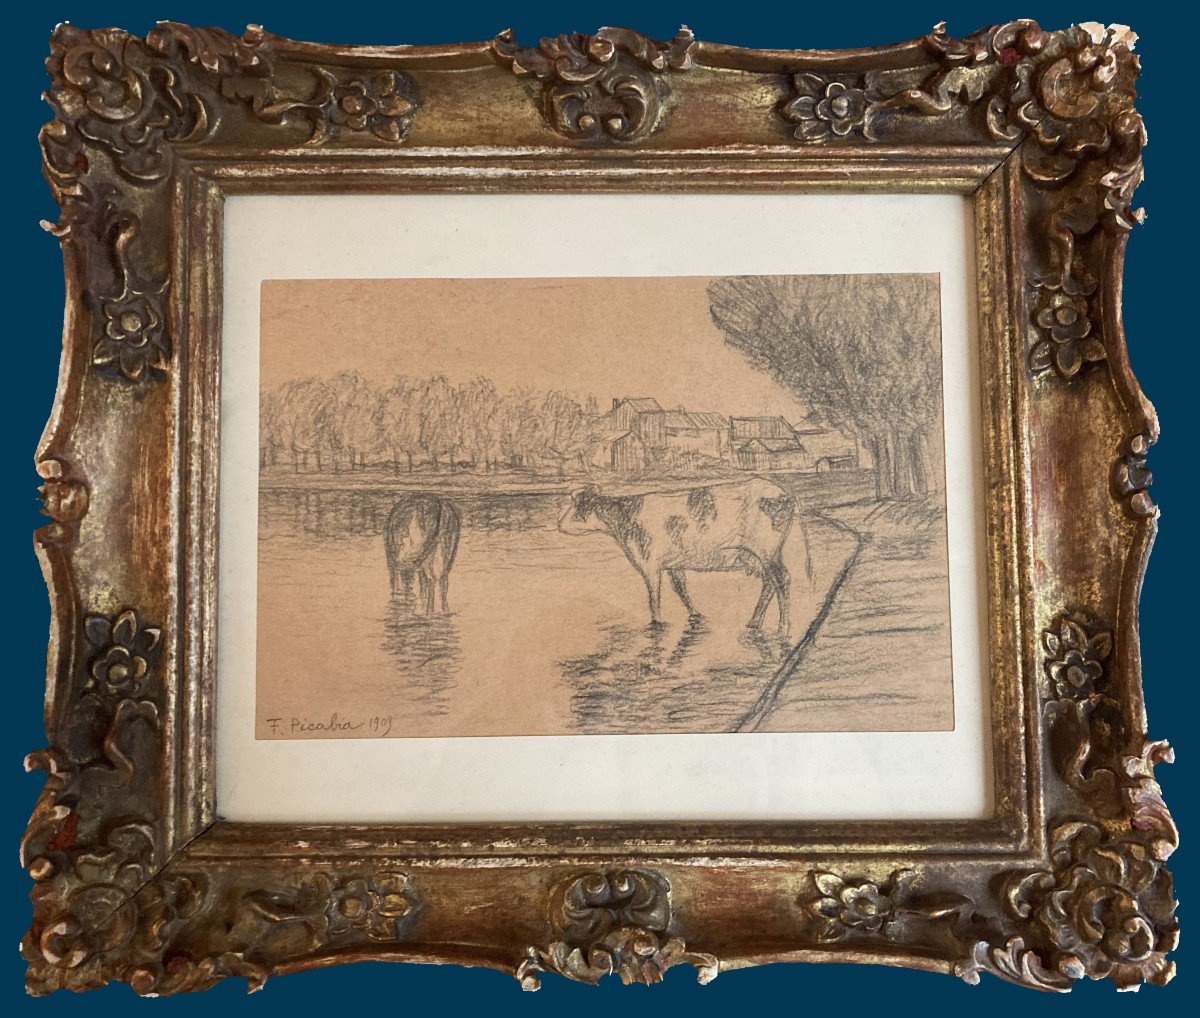 PICABIA Francis (1879-1953) "Vaches au bord de la rivière" Dessin/Crayon noir, signé,daté,Cadre